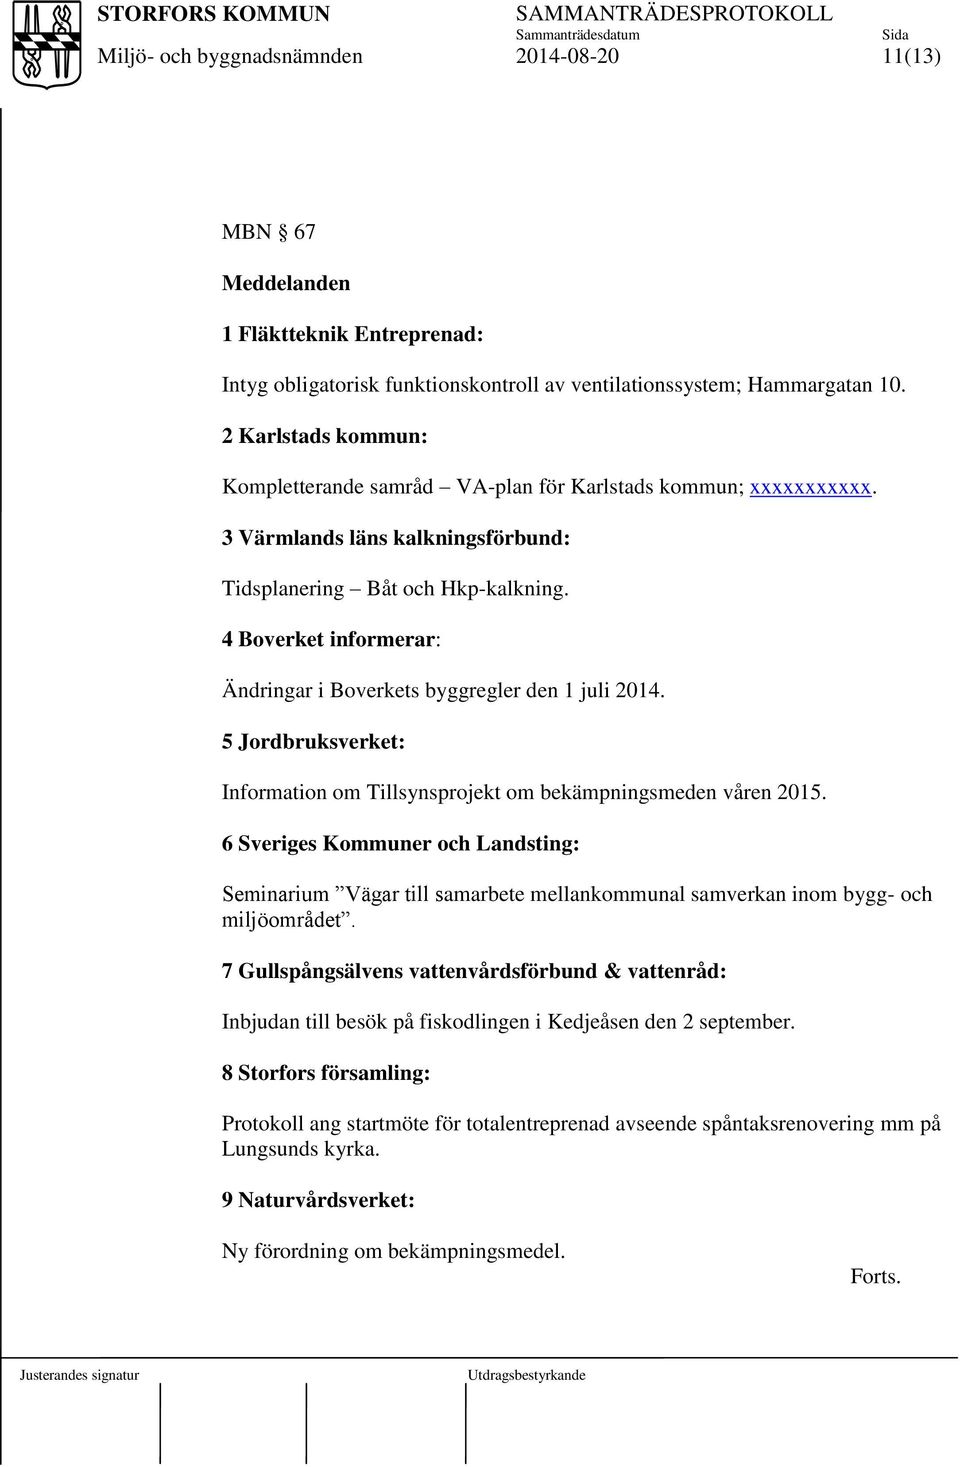 4 Boverket informerar: Ändringar i Boverkets byggregler den 1 juli 2014. 5 Jordbruksverket: Information om Tillsynsprojekt om bekämpningsmeden våren 2015.